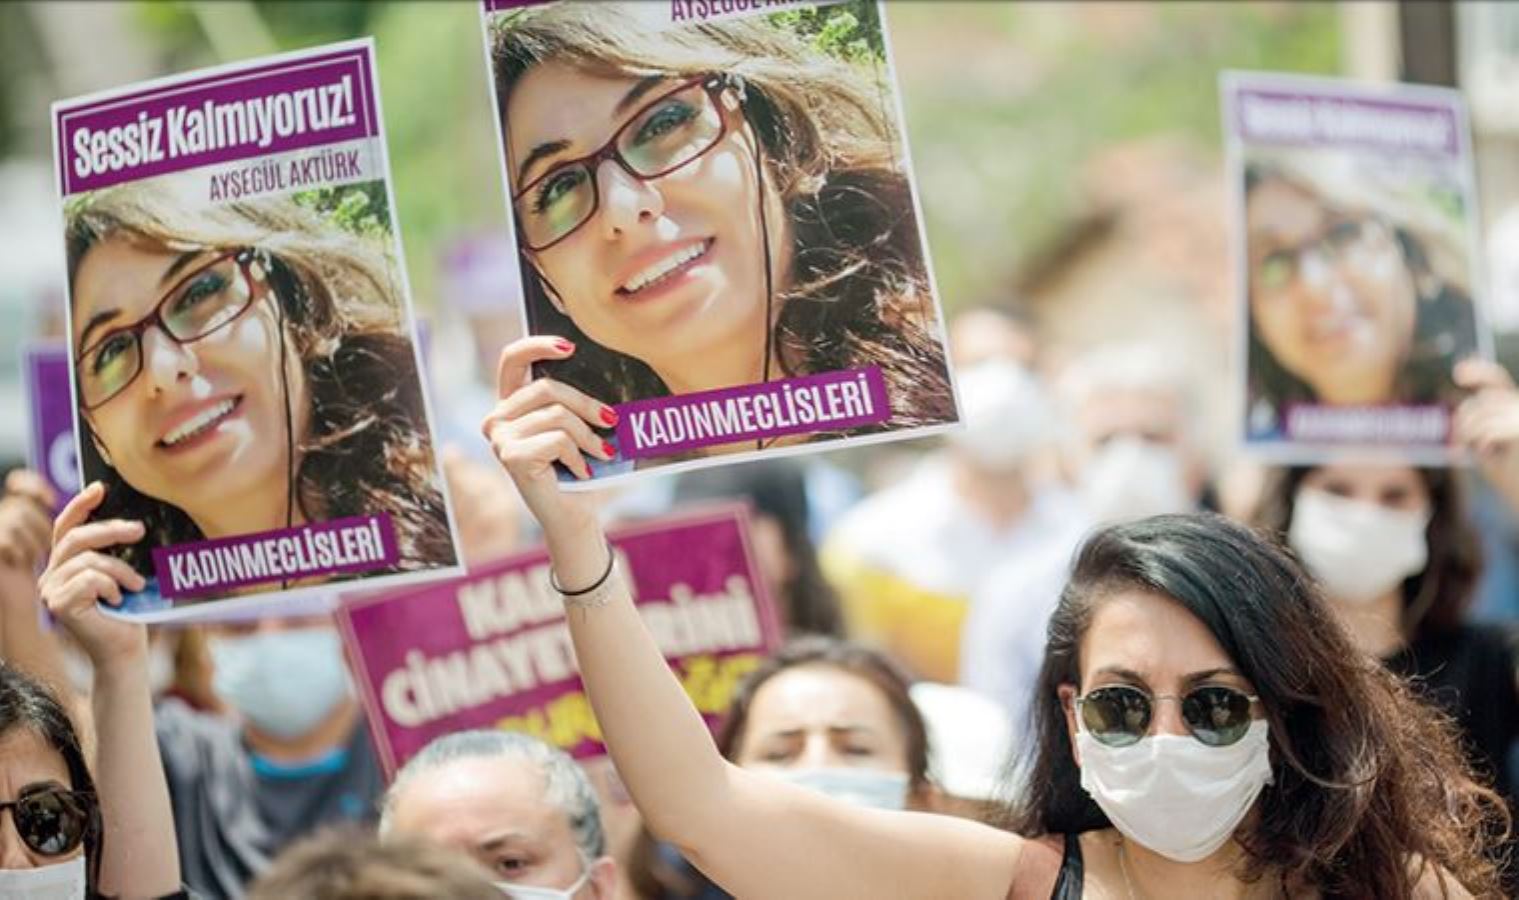 Ayşegül Aktürk cinayeti ile ilgili görülen davada sanığın tutukluluk halinin devamına karar verildi